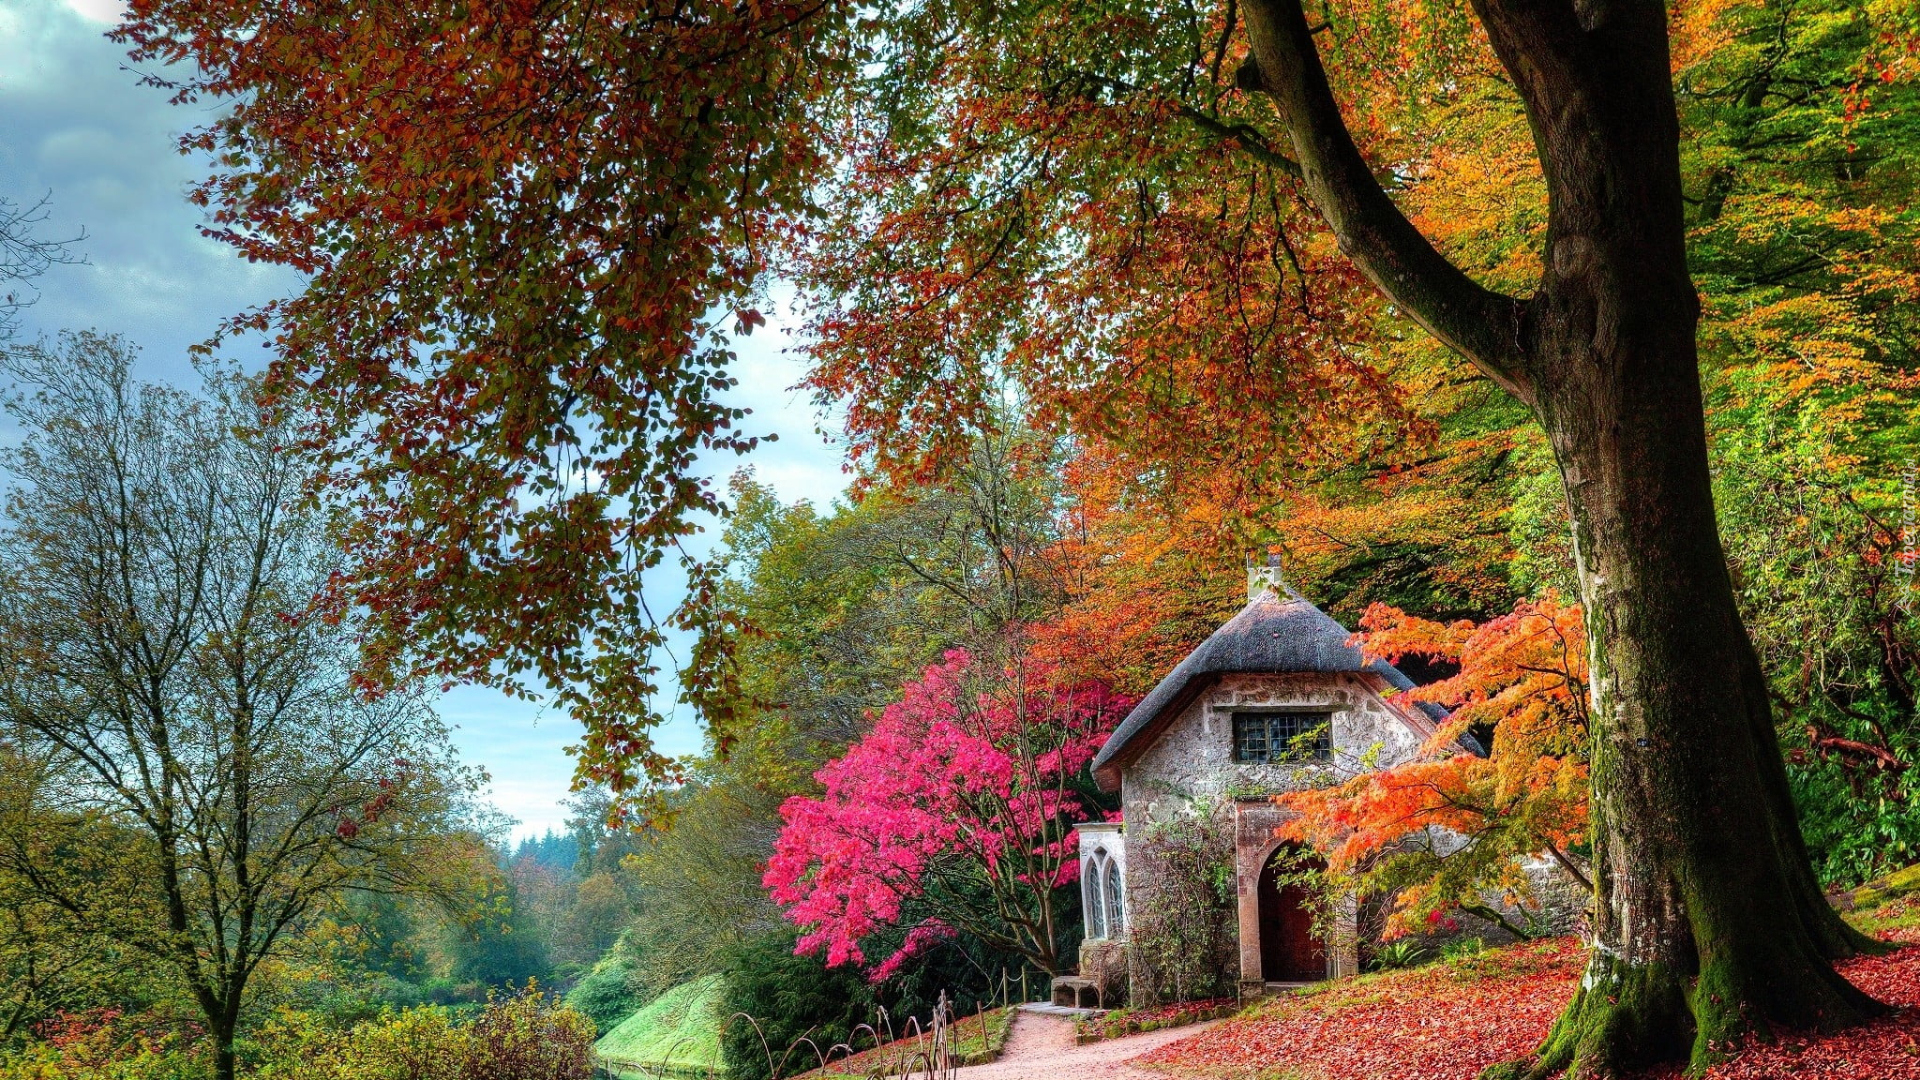 Dom, Droga, Drzewa, Jesień